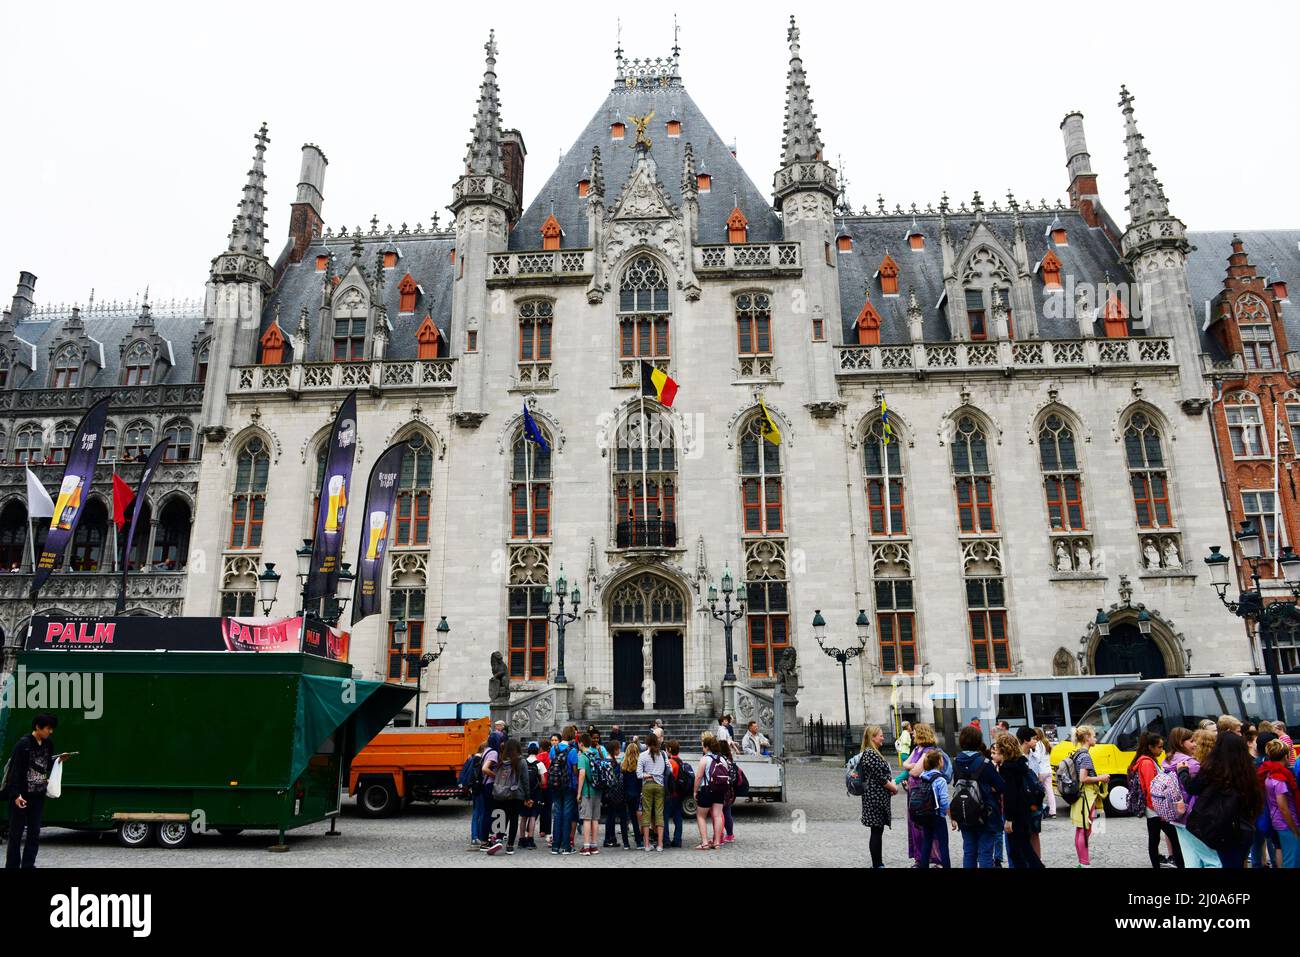 Das Provinzgericht ist ein wunderschönes Gebäude im Stil der Gotik in Brügge, Belgien. Stockfoto